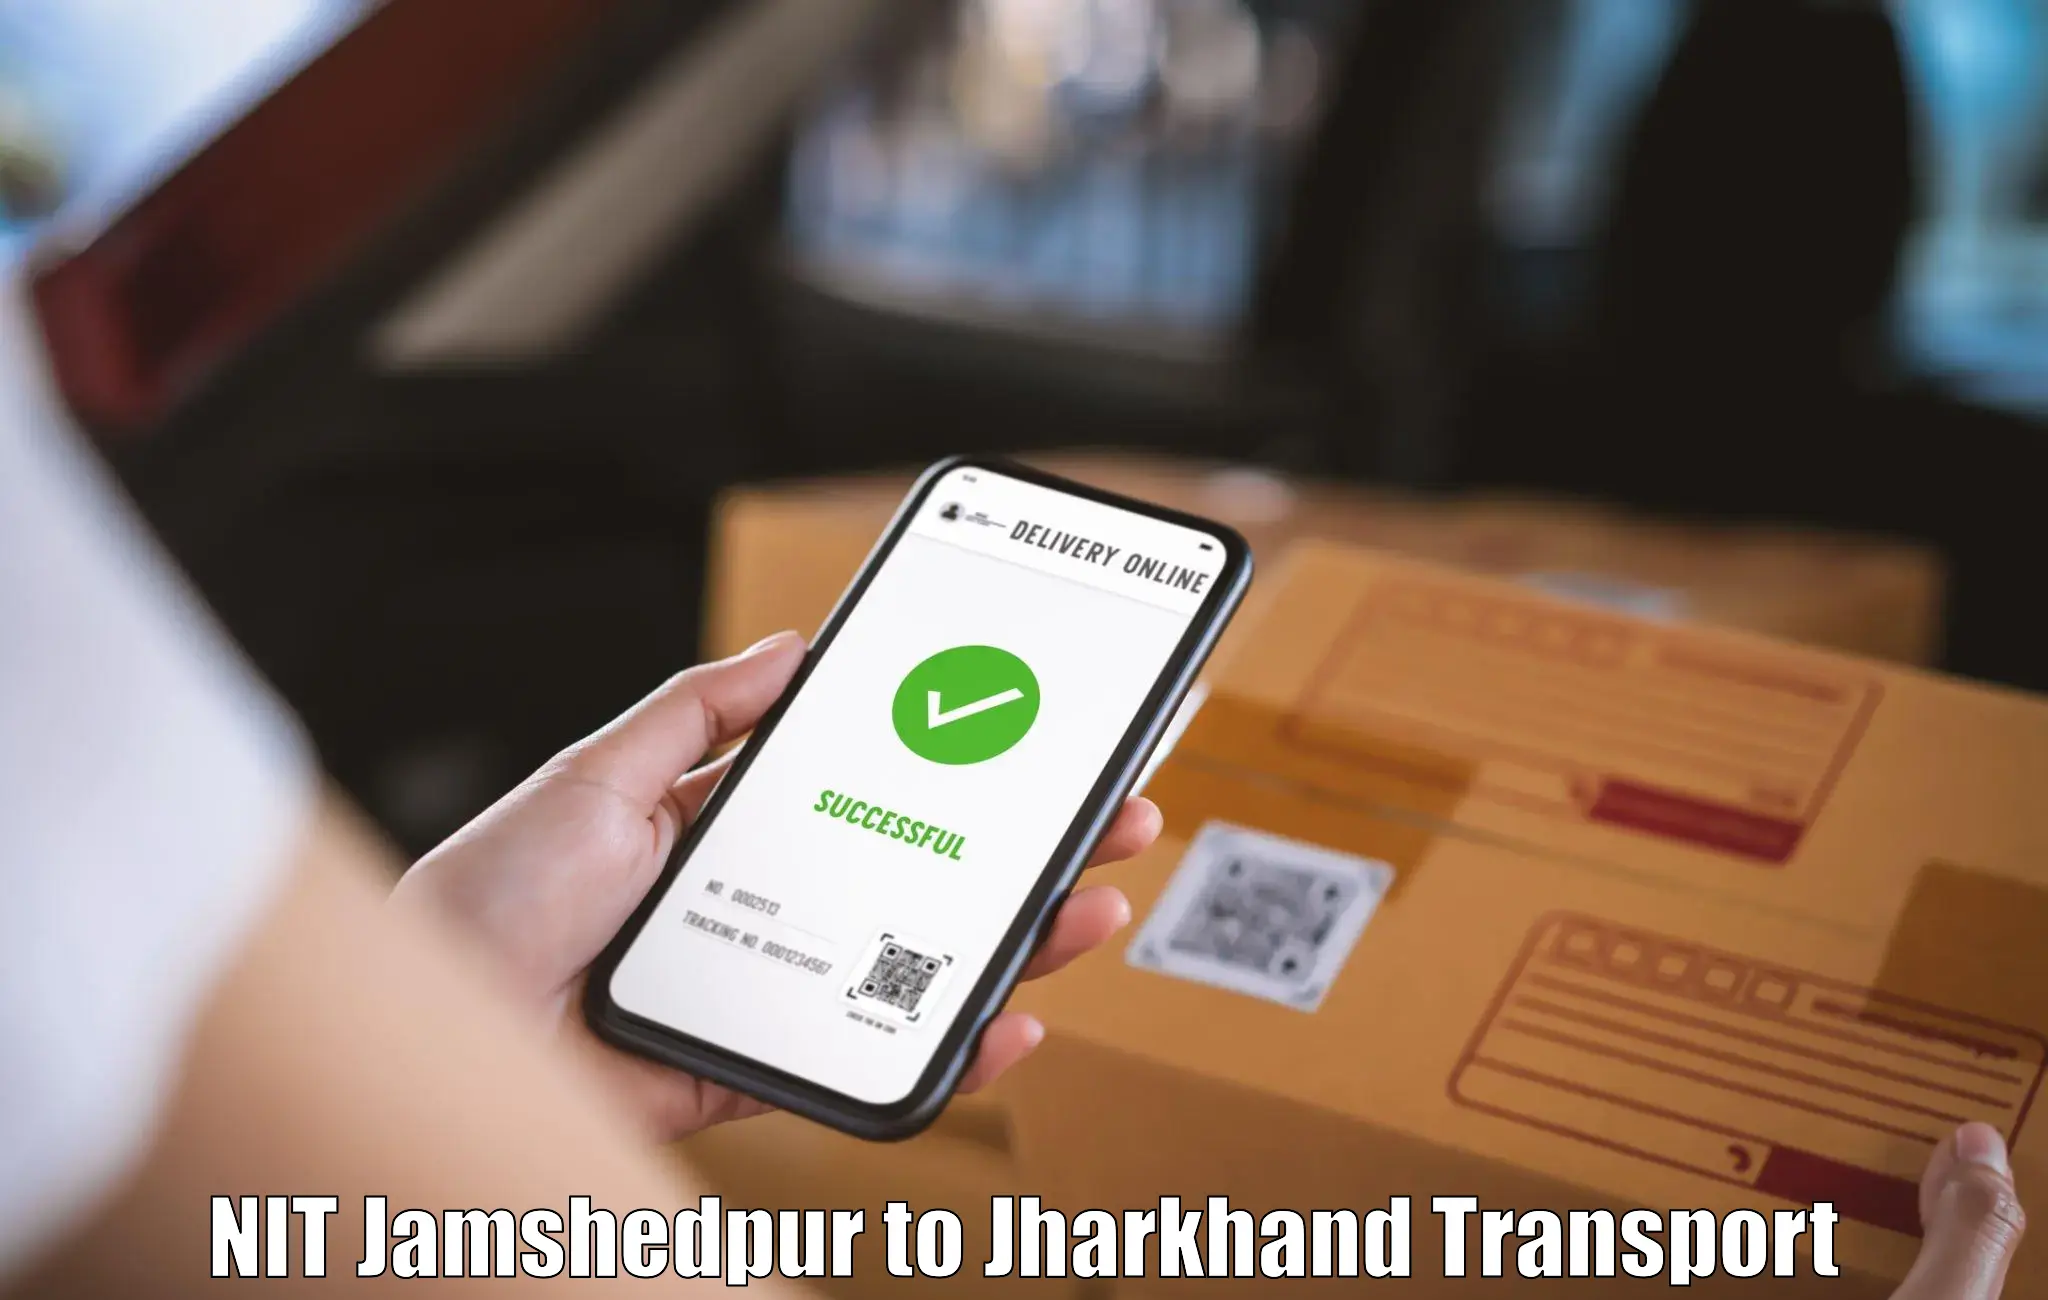 Pick up transport service NIT Jamshedpur to NIT Jamshedpur